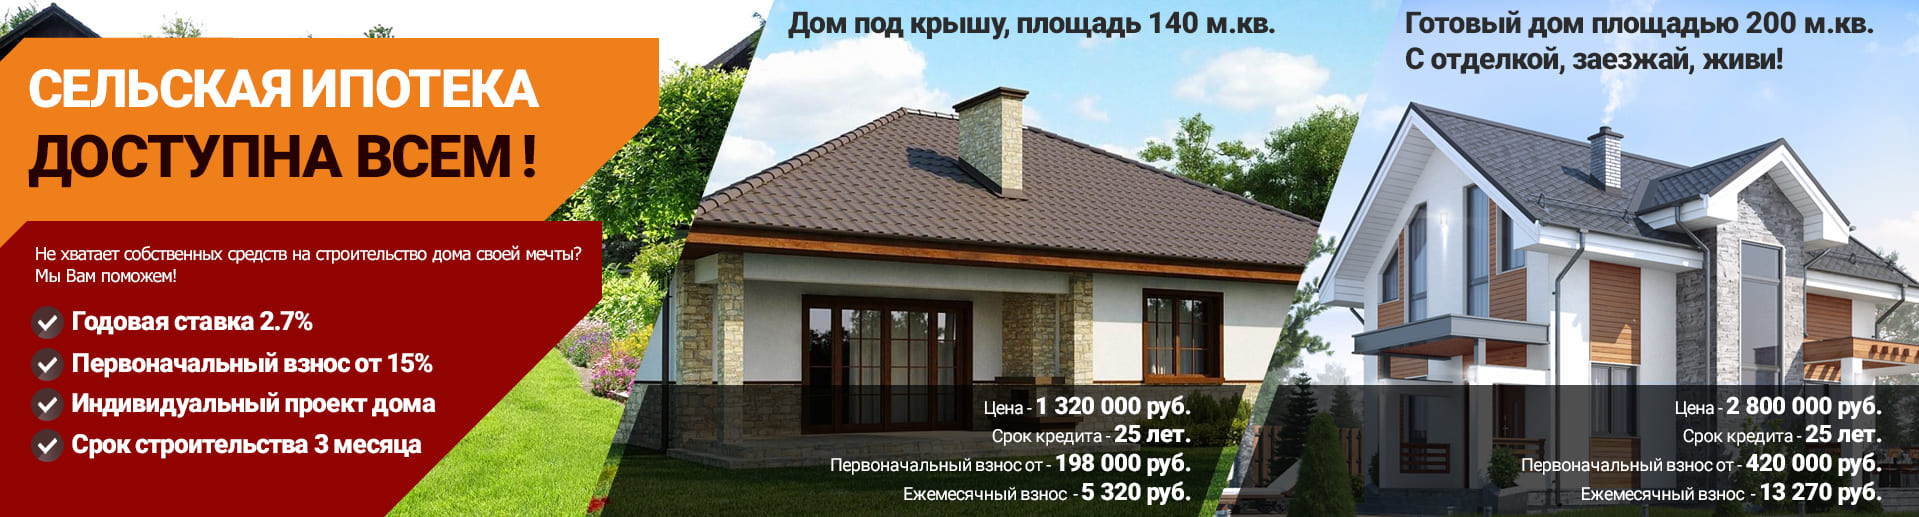 Сельская ипотека на строительство дома в Тольятти